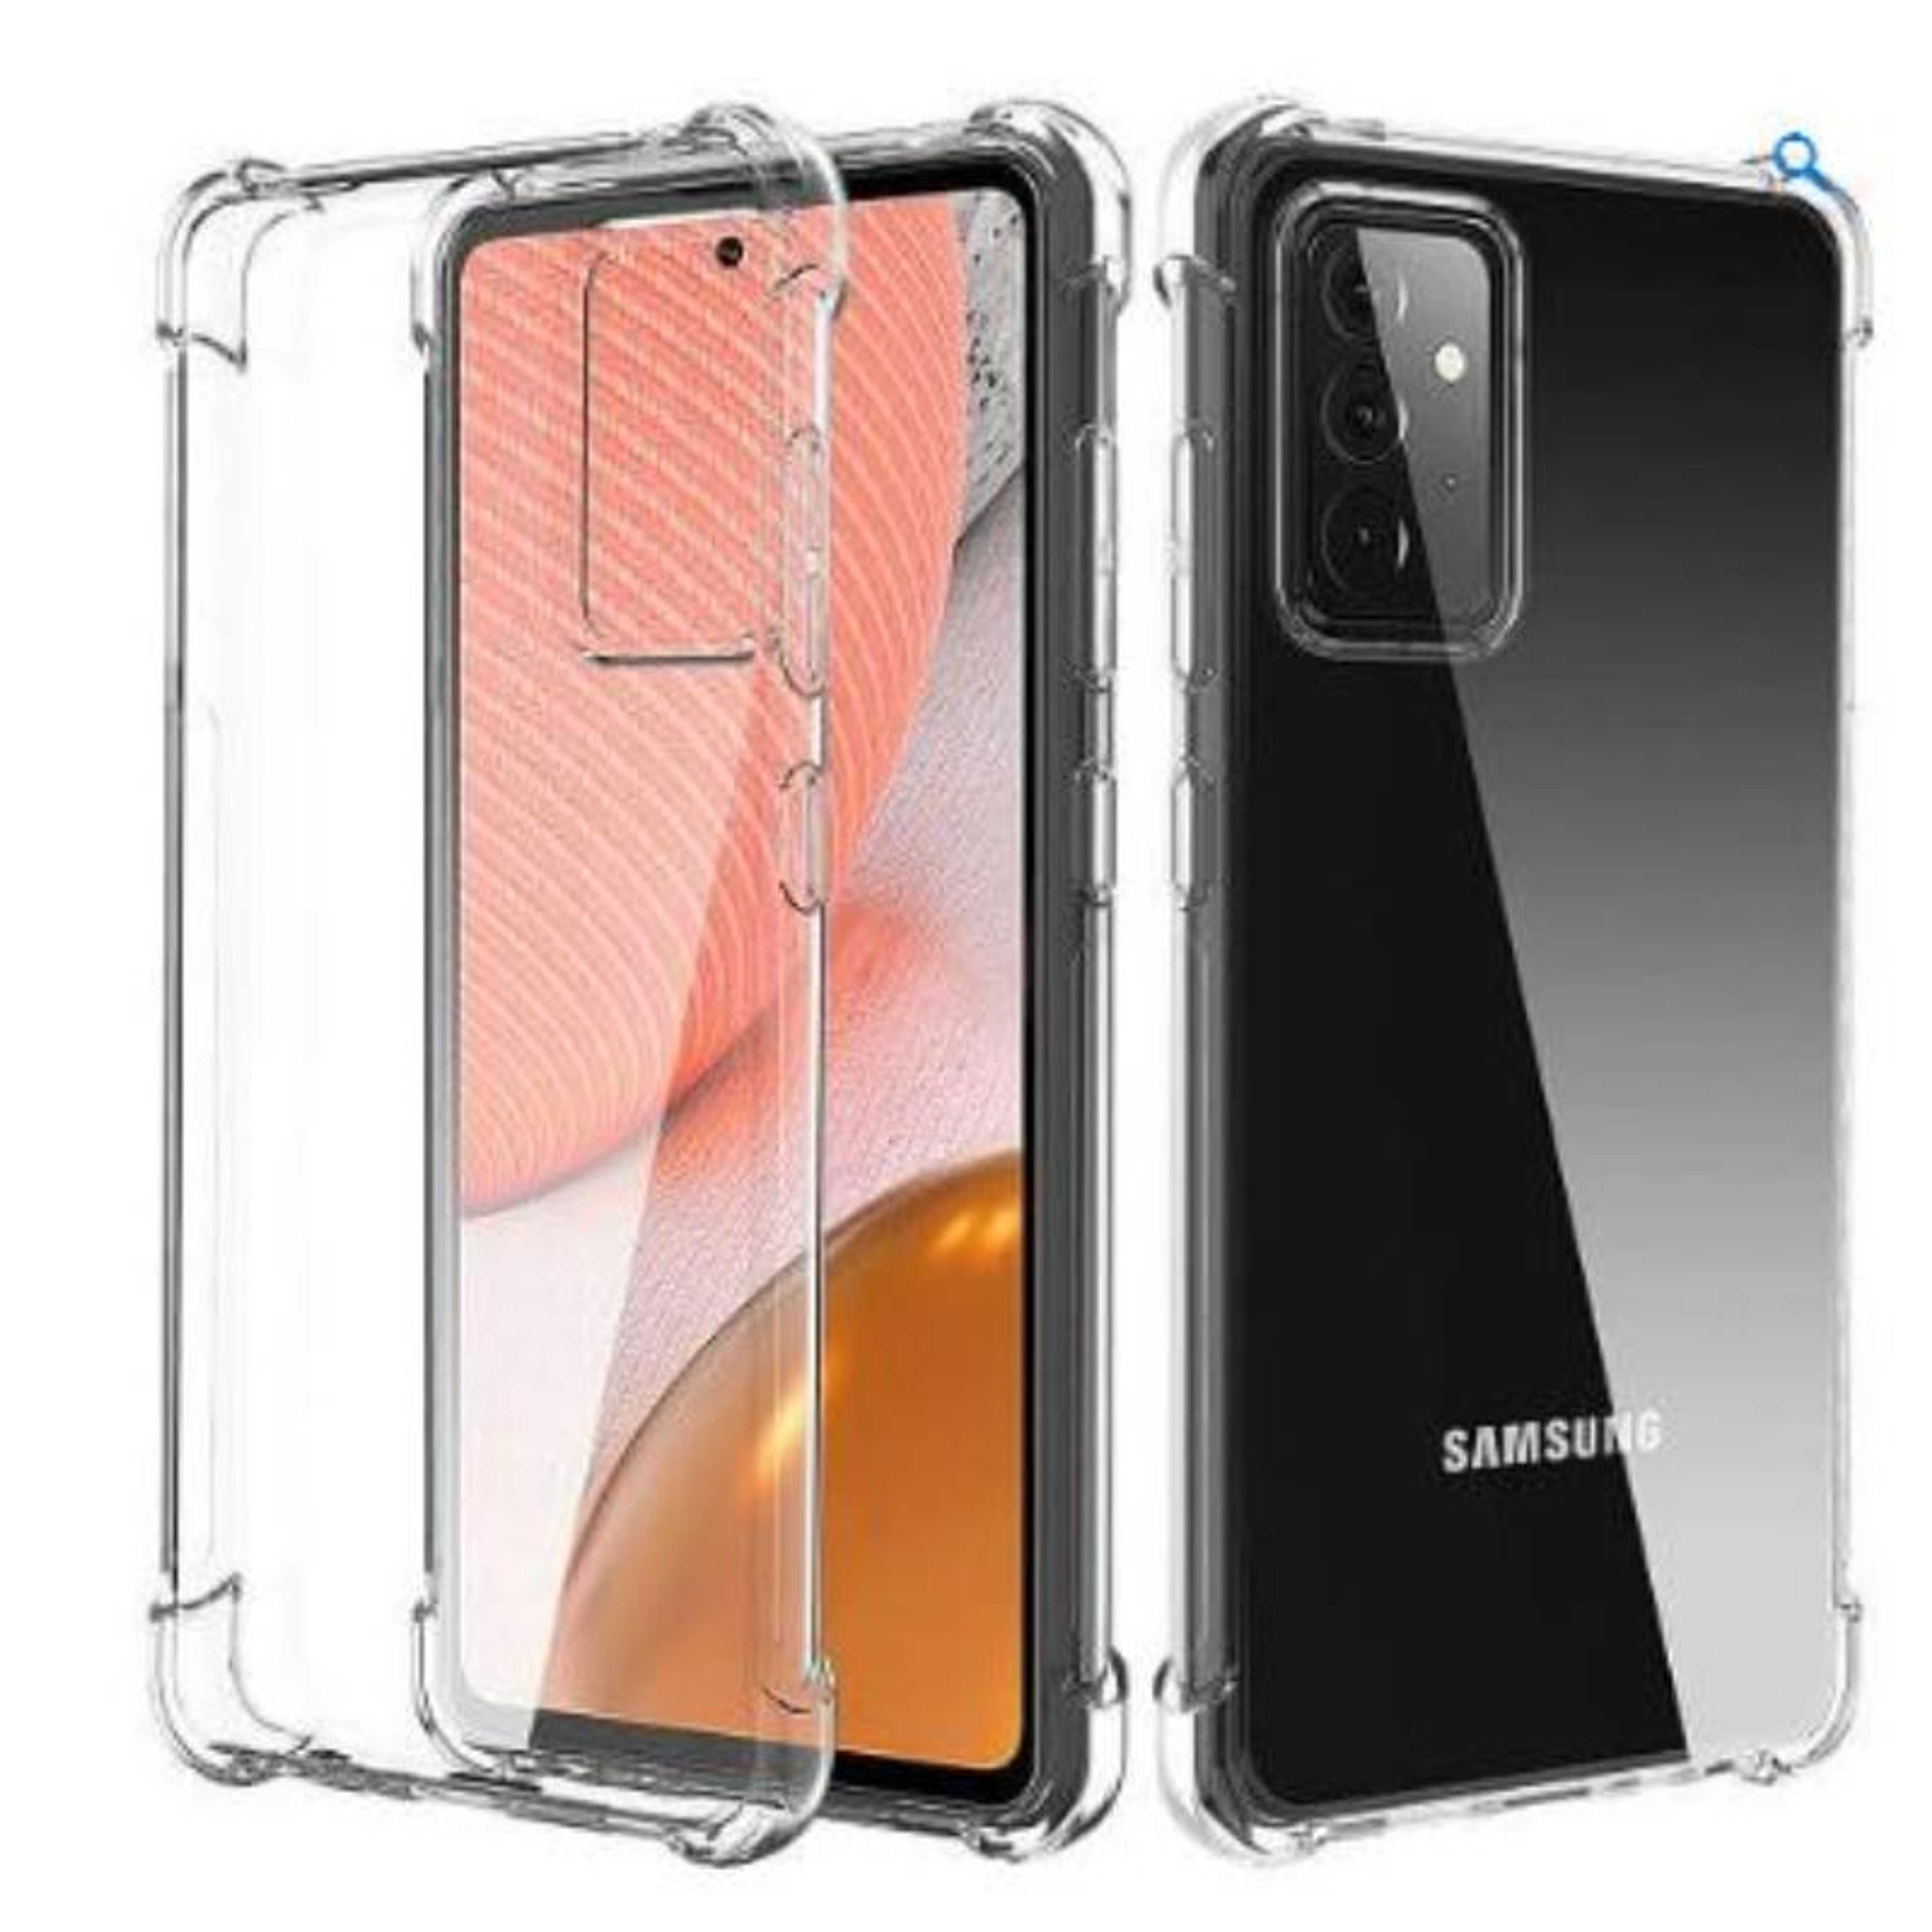 Samsung Galaxy A72 5G Case ,Ultra Slim fit | TPU Bumper,Anti-Scratch Phone Case for Samsung Galaxy A72 (Clear)